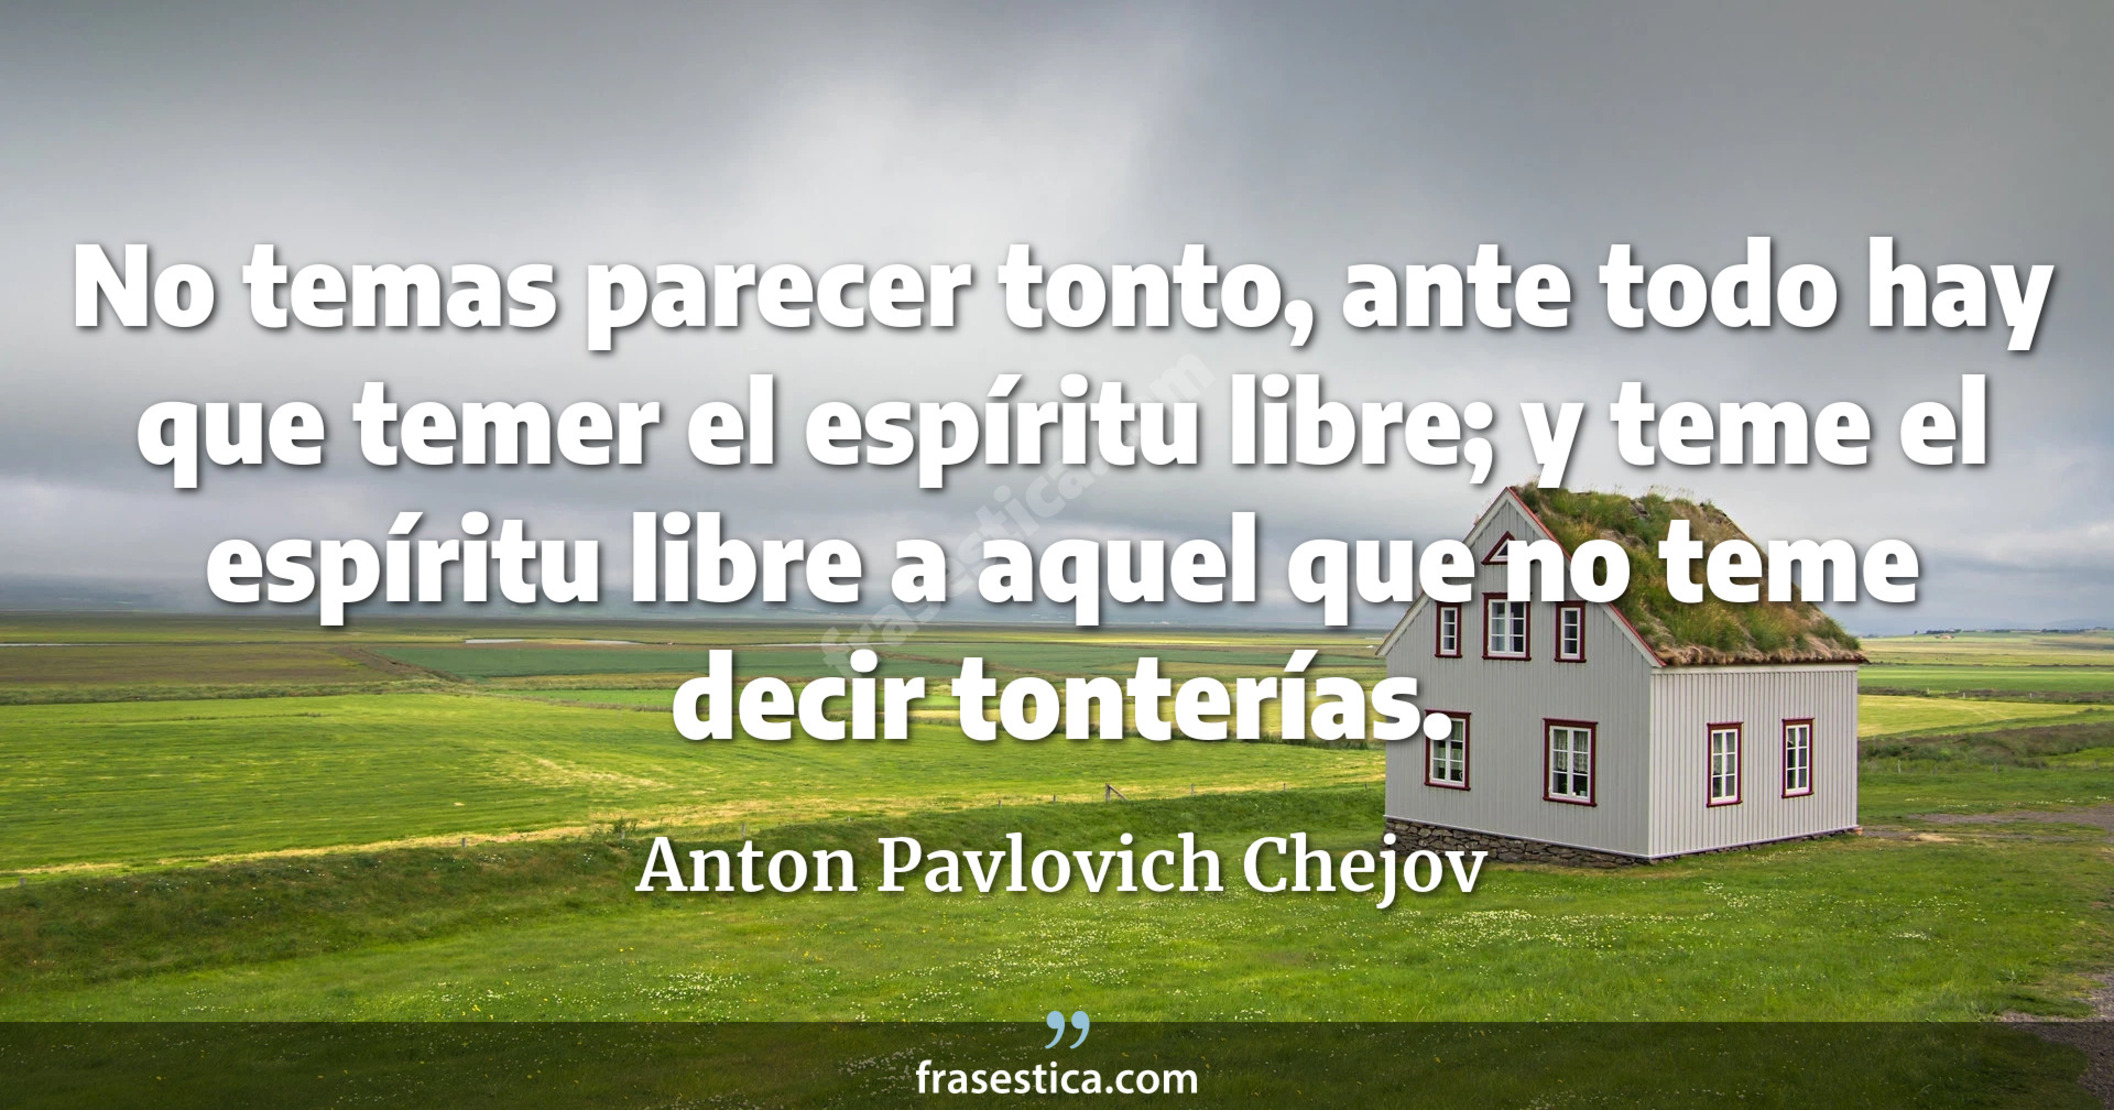 No temas parecer tonto, ante todo hay que temer el espíritu libre; y teme el espíritu libre a aquel que no teme decir tonterías. - Anton Pavlovich Chejov